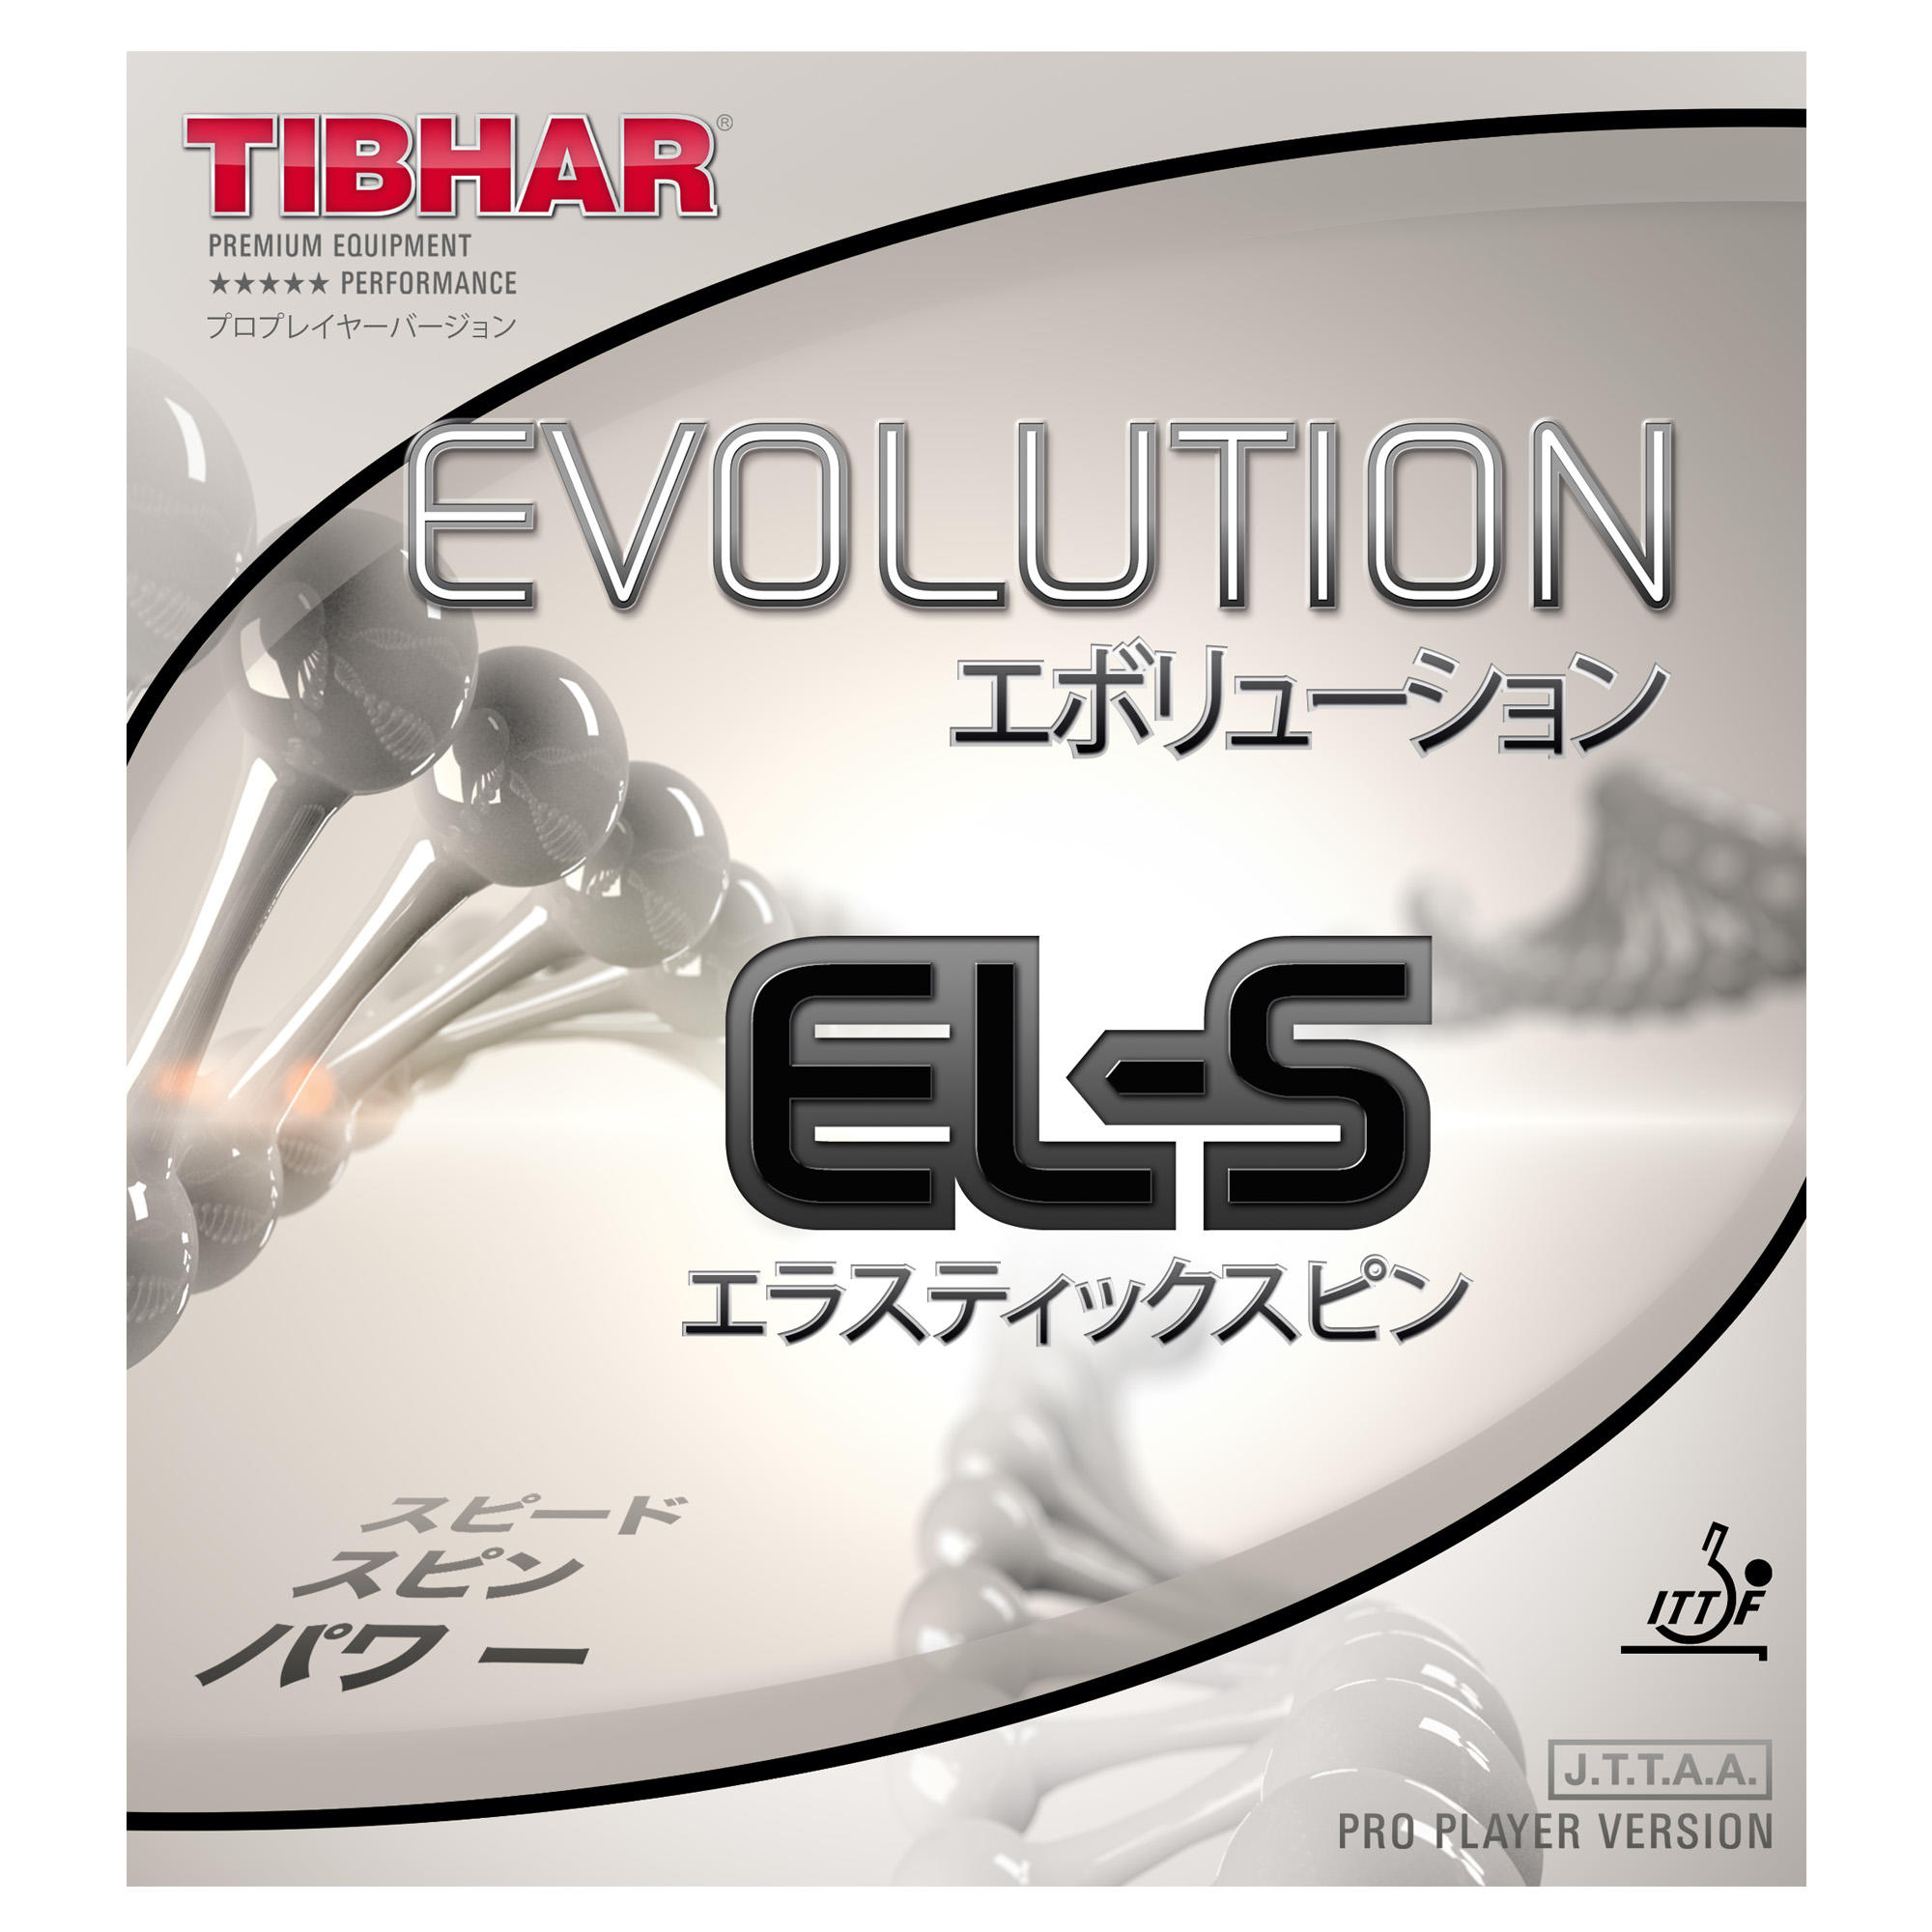 Față Paletă Tenis Evolution EL-S Accesorii